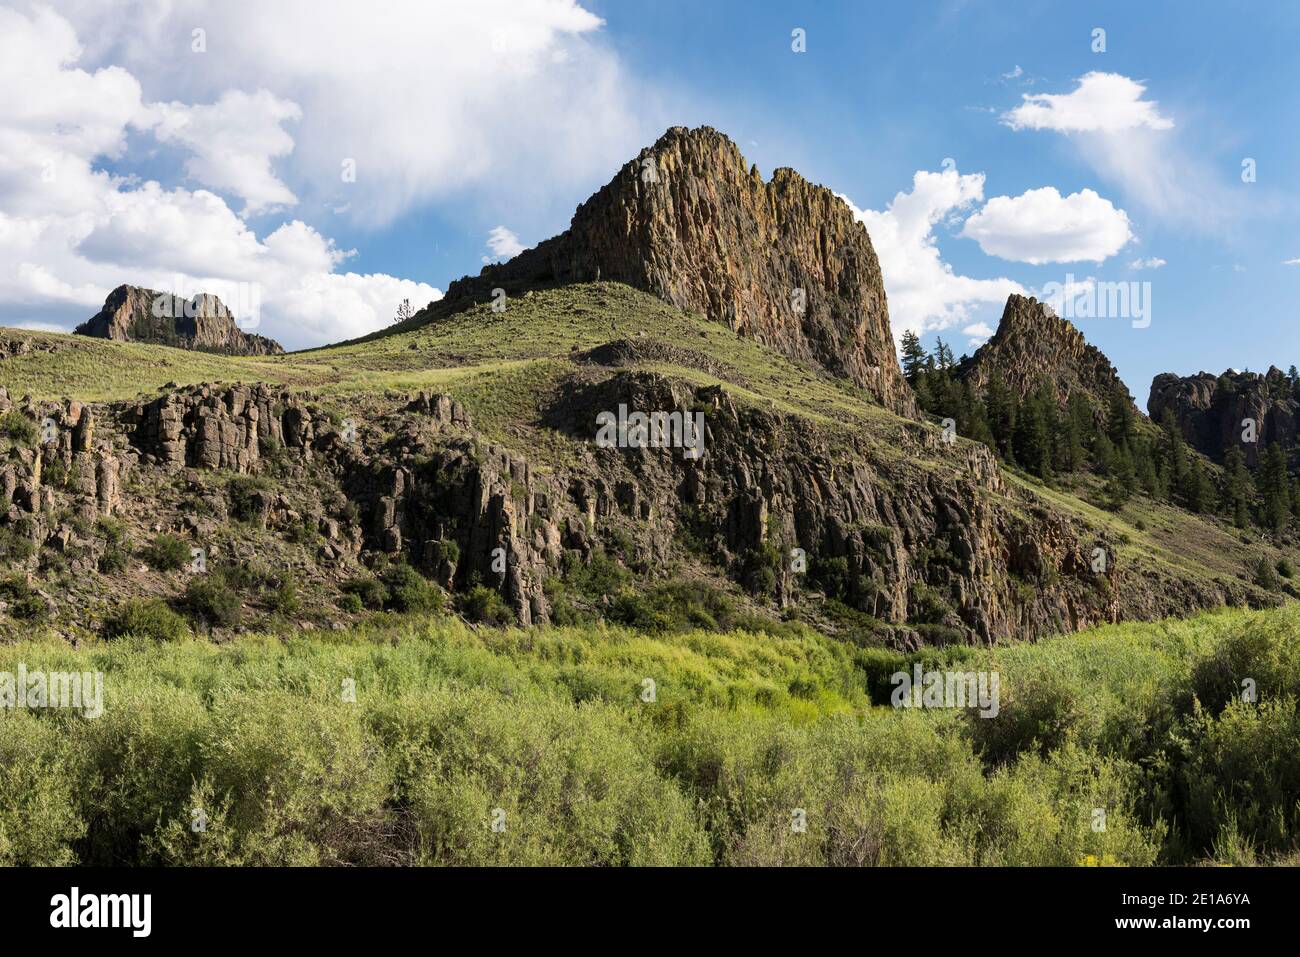 La formation rocheuse de Castles est située dans la forêt nationale de San Isabel, Colorado. Banque D'Images